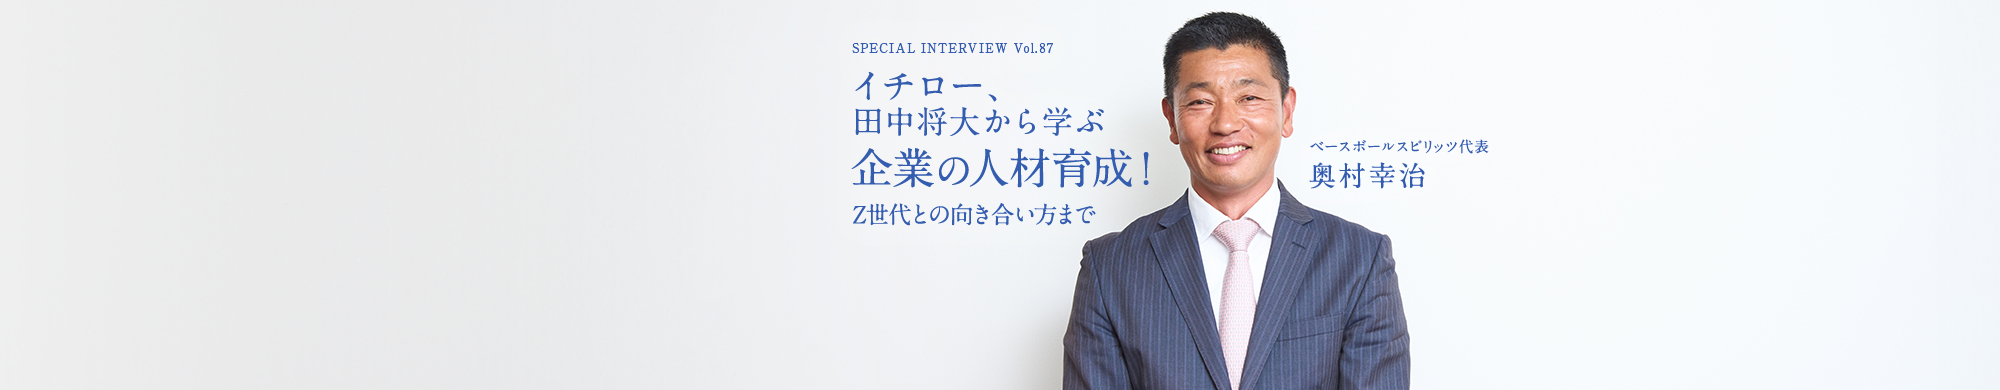 奥村幸治のスペシャルインタビュー「イチロー、田中将大から学ぶ企業の人材育成！Z世代との向き合い方まで」